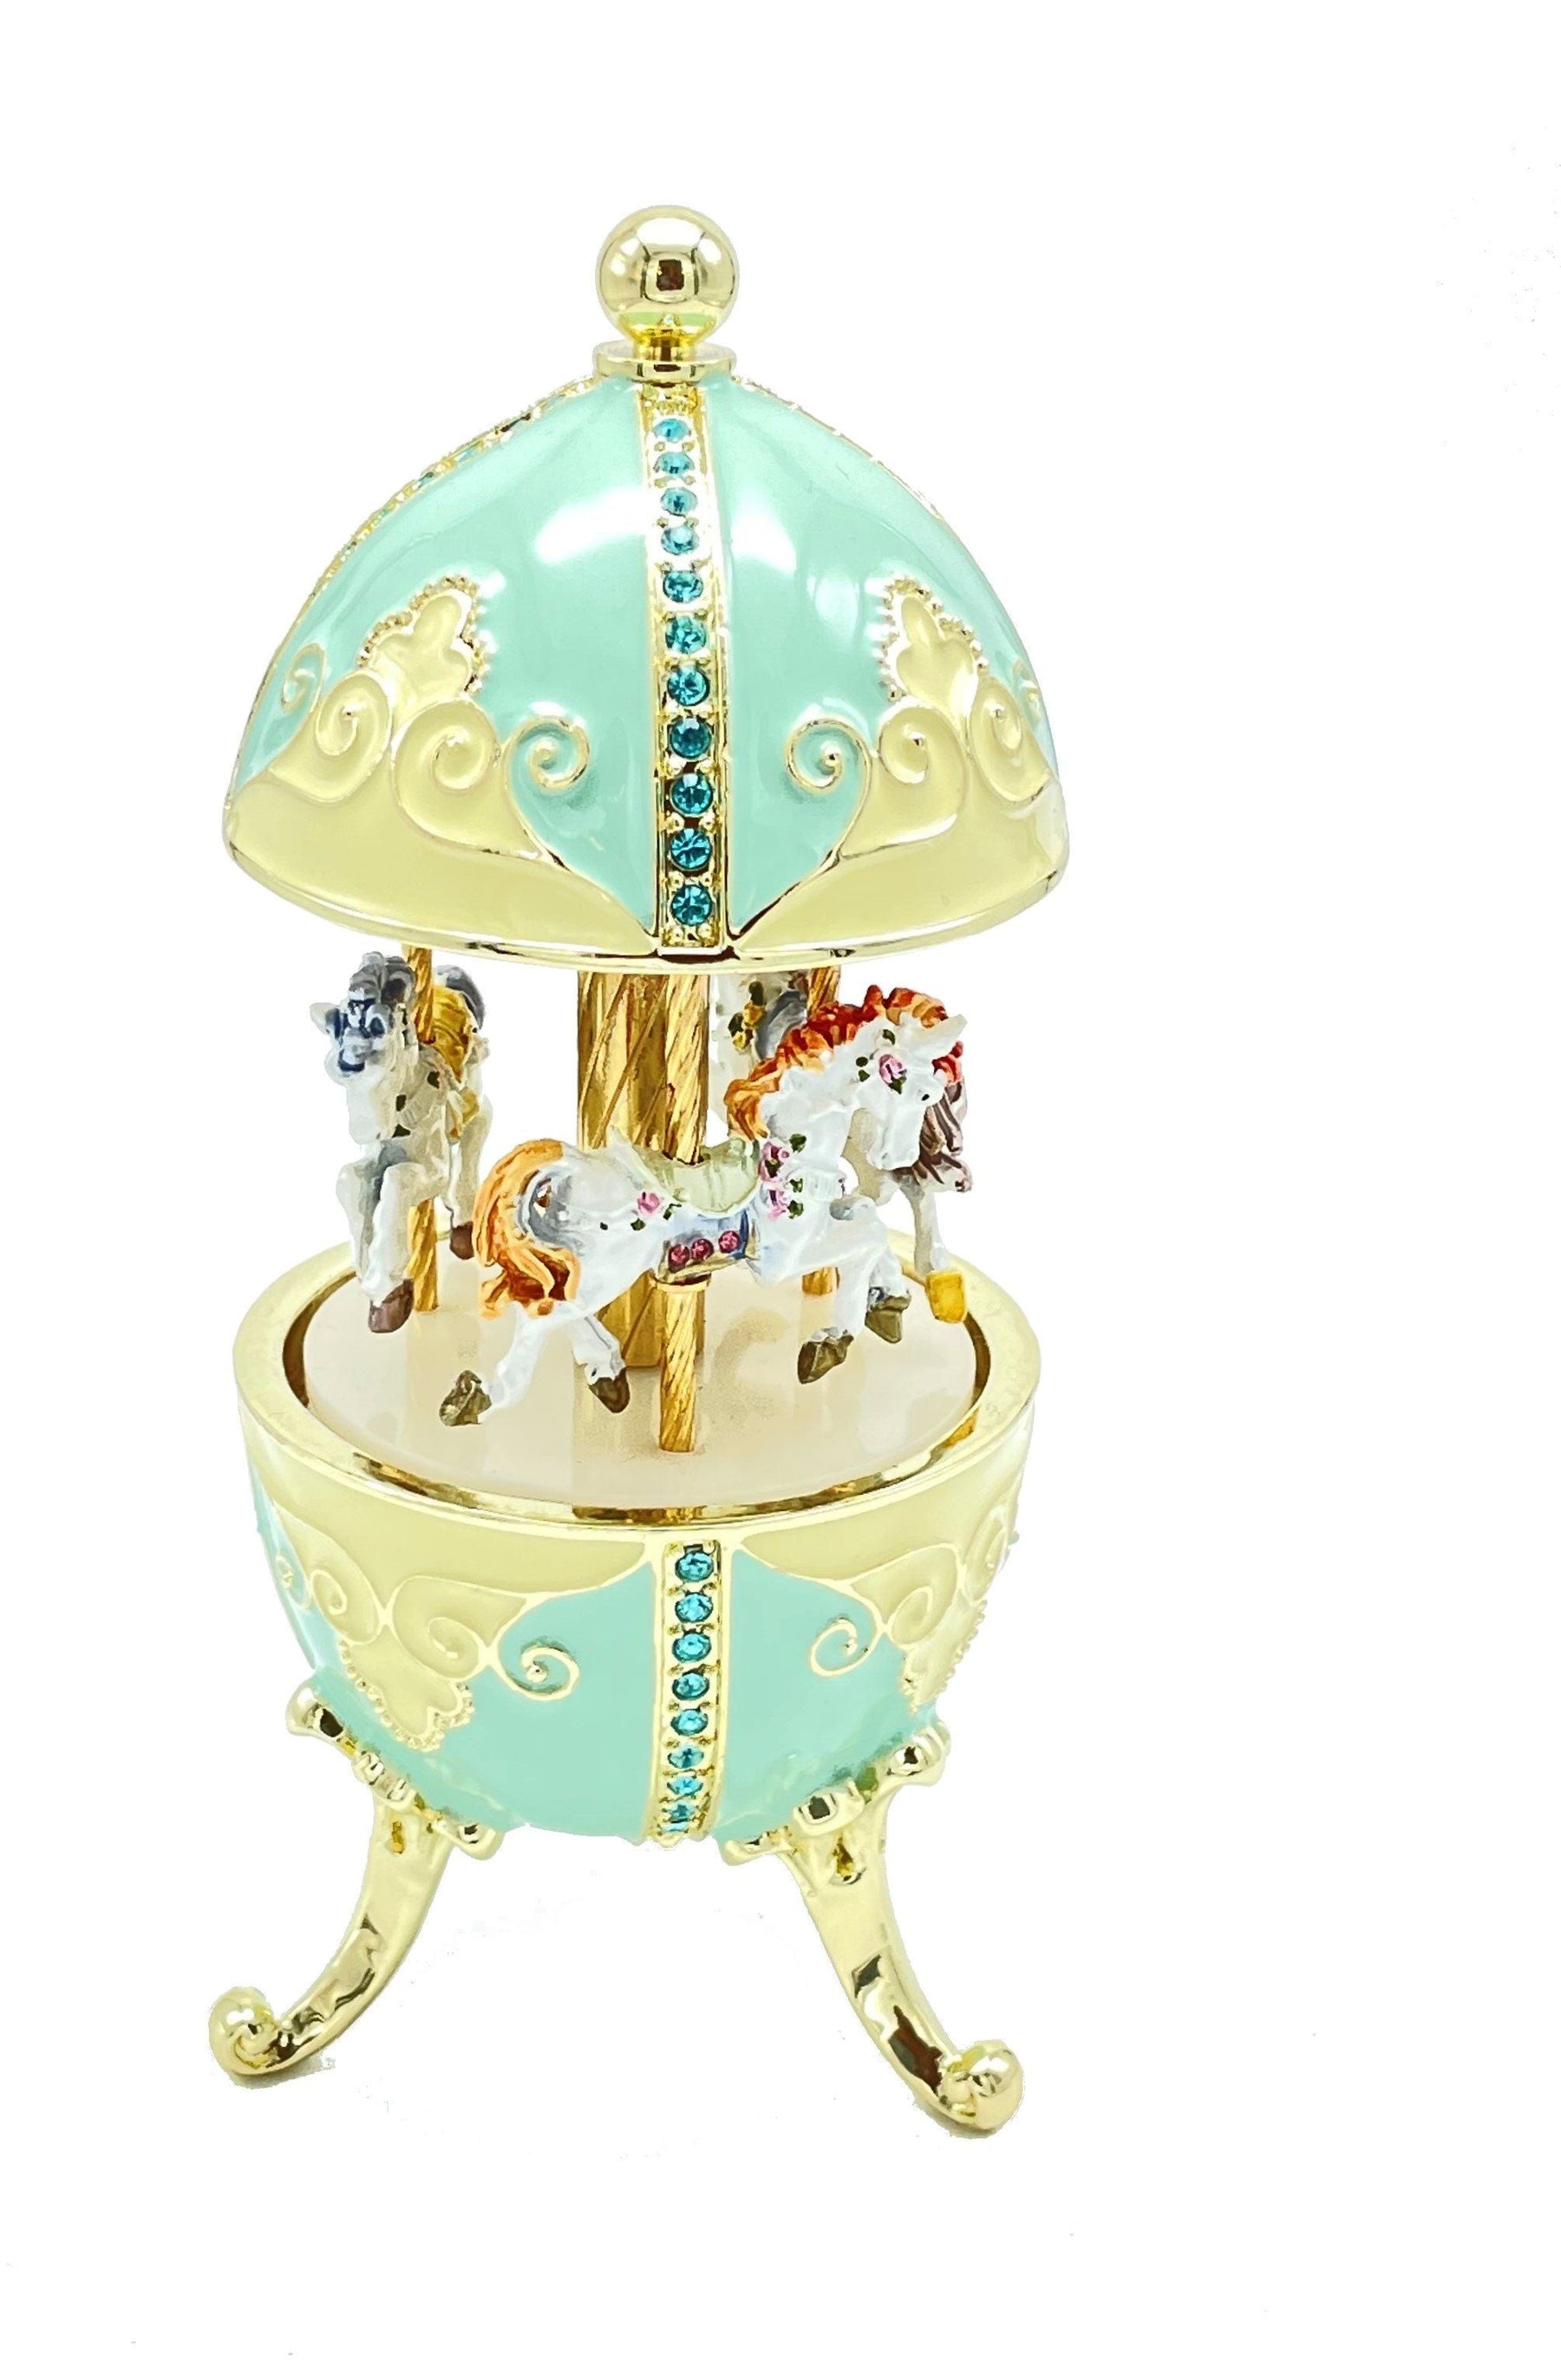 Turquoise Musical Carousel with Royal Horses Easter Egg Keren Kopal